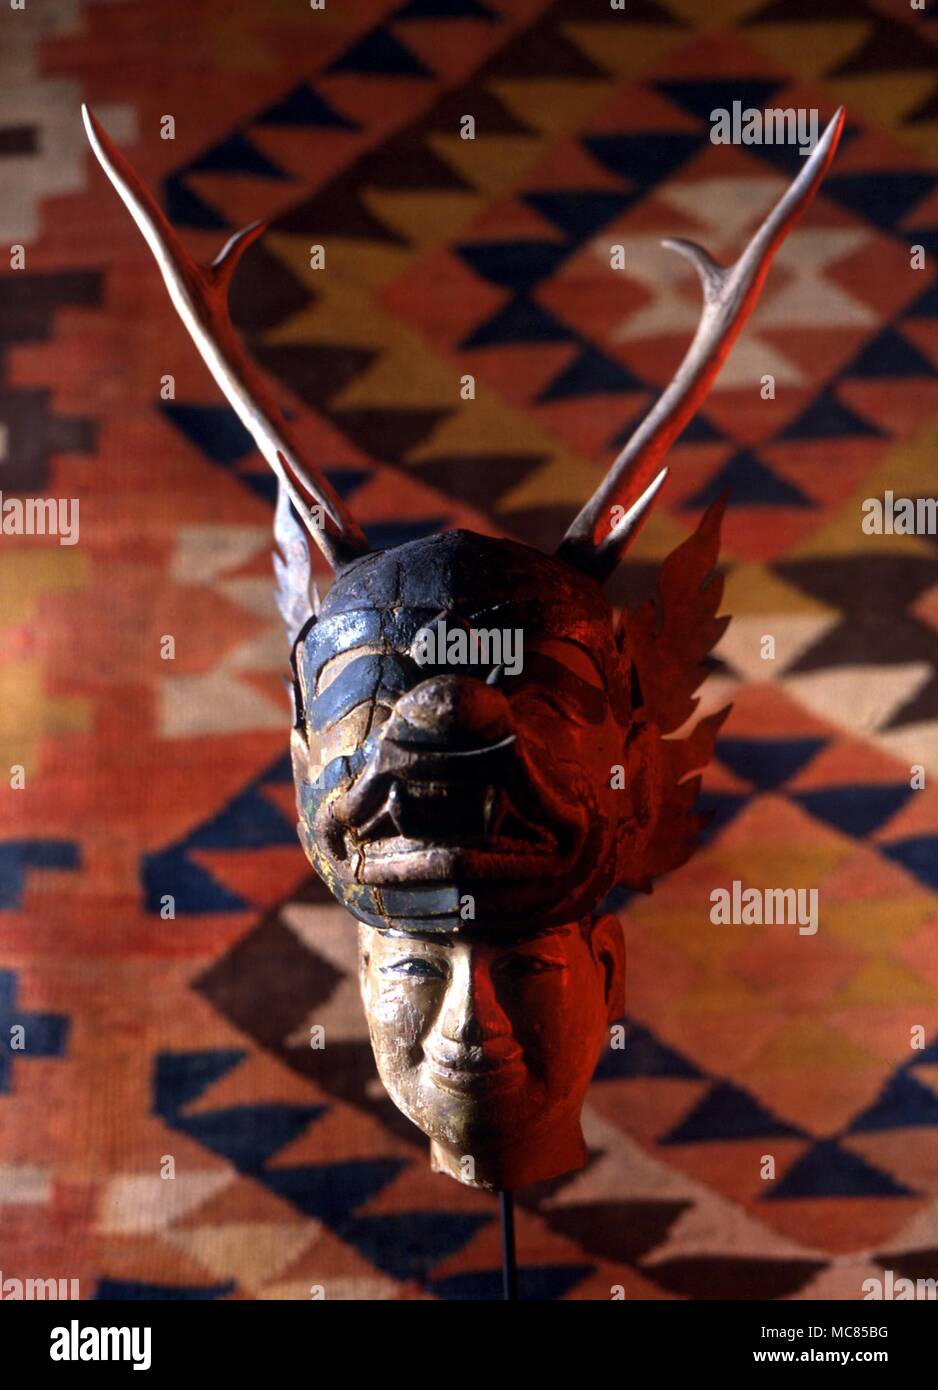 Gehörnte Maske, mit Gesicht: Vielleicht eine Temple Guardian? Burma. Von der Gordon Reece Gallery, Knaresborough. Stockfoto